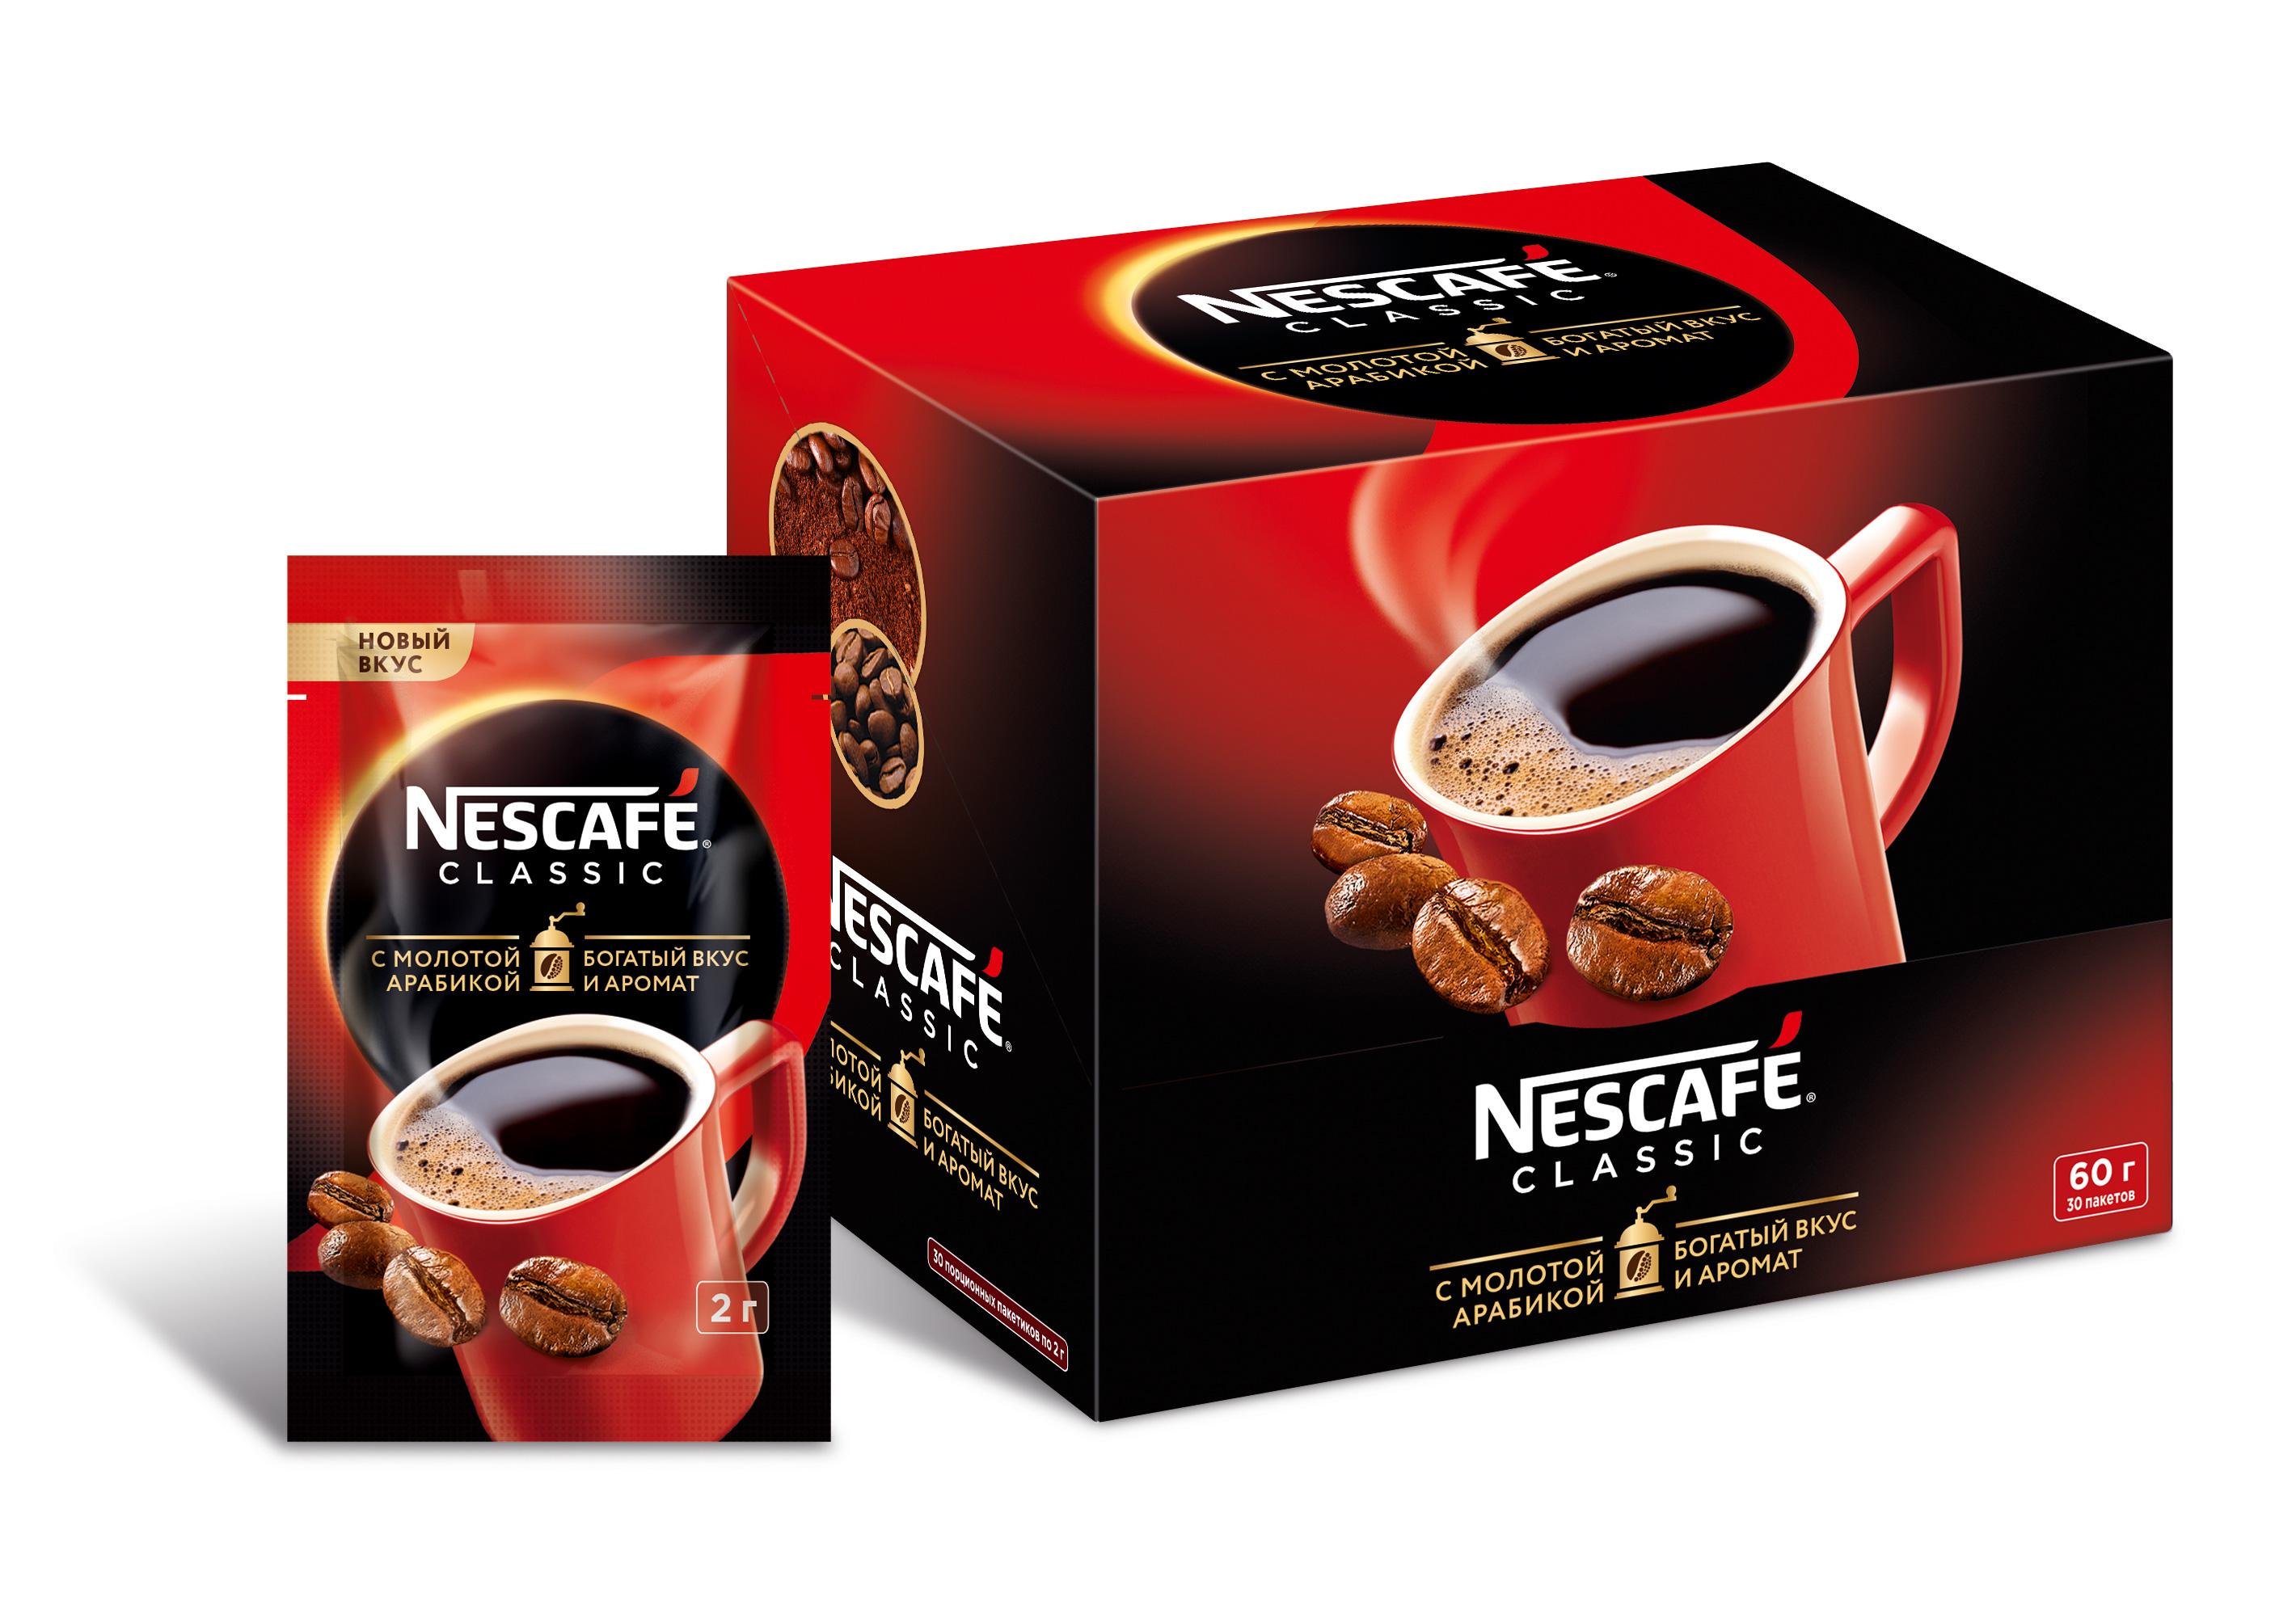 

Кофе Nescafe classic 100% растворимый с добавлением жареного молотого кофе 30 штук по 2 г